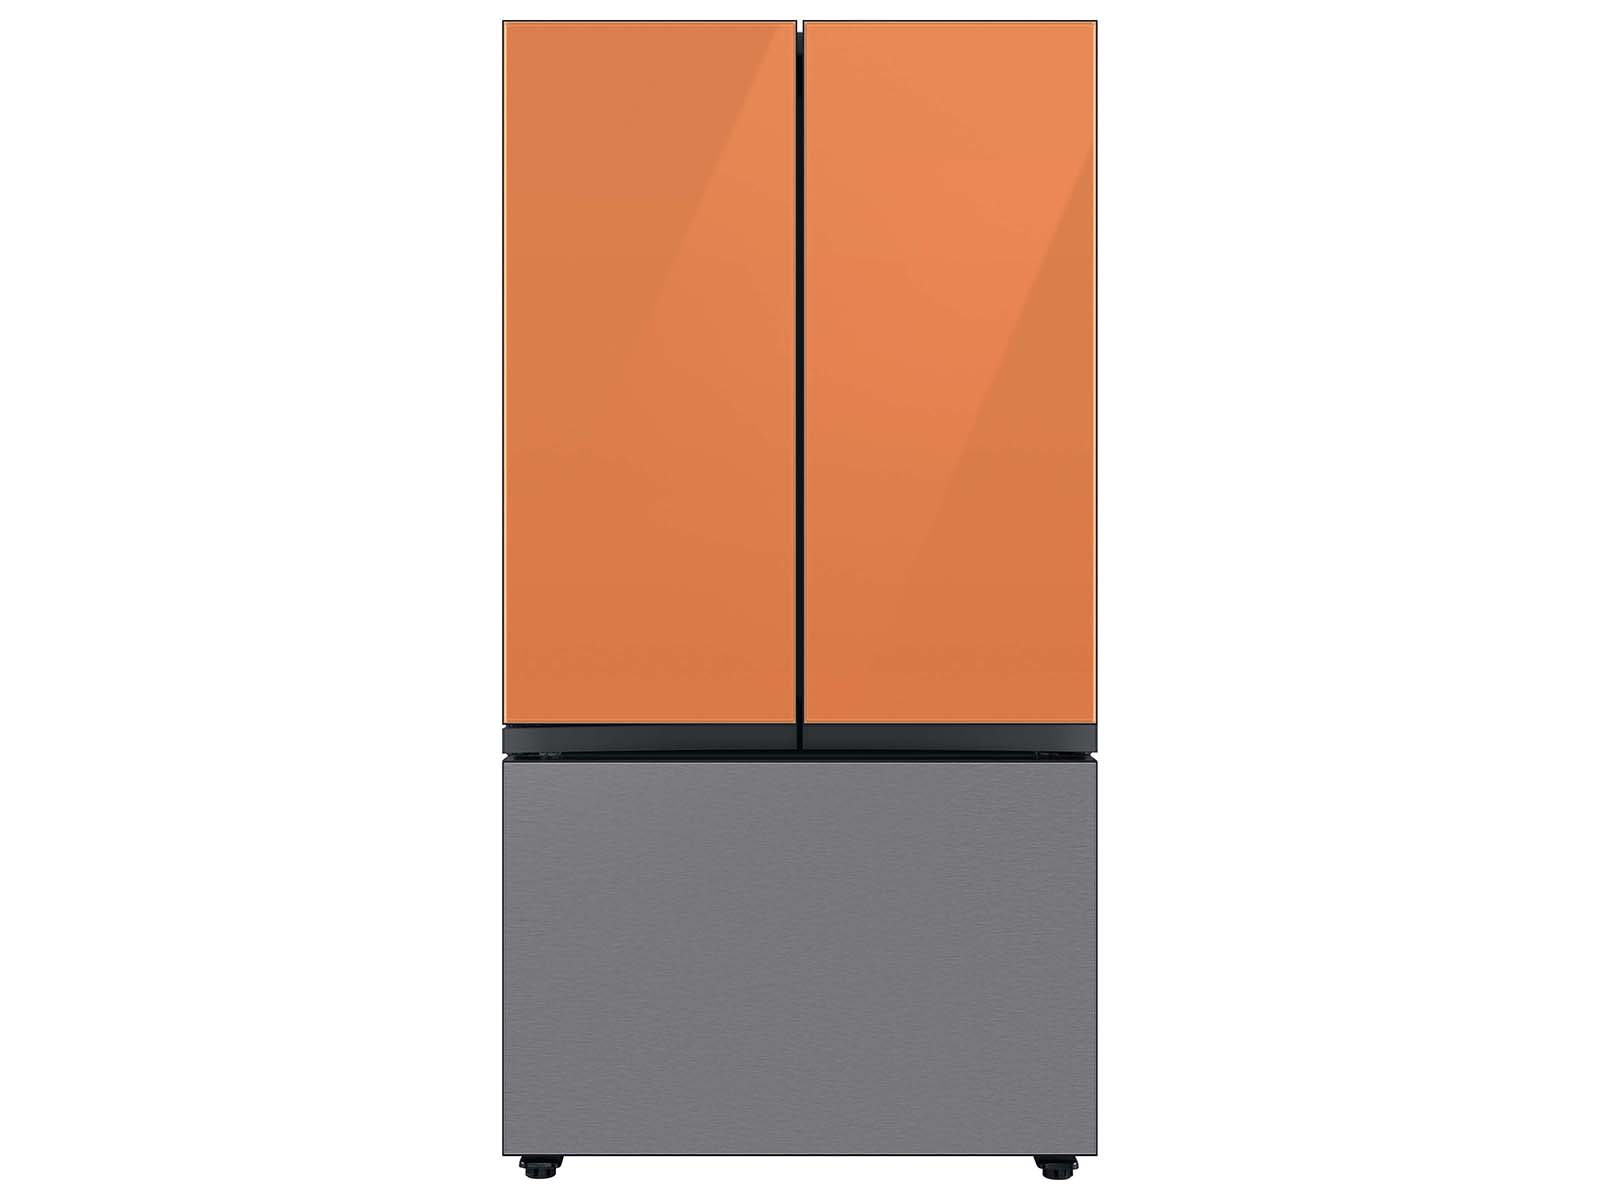 Thumbnail image of Bespoke 3-Door French Door Refrigerator Panel in Clementine Glass - Top Panel